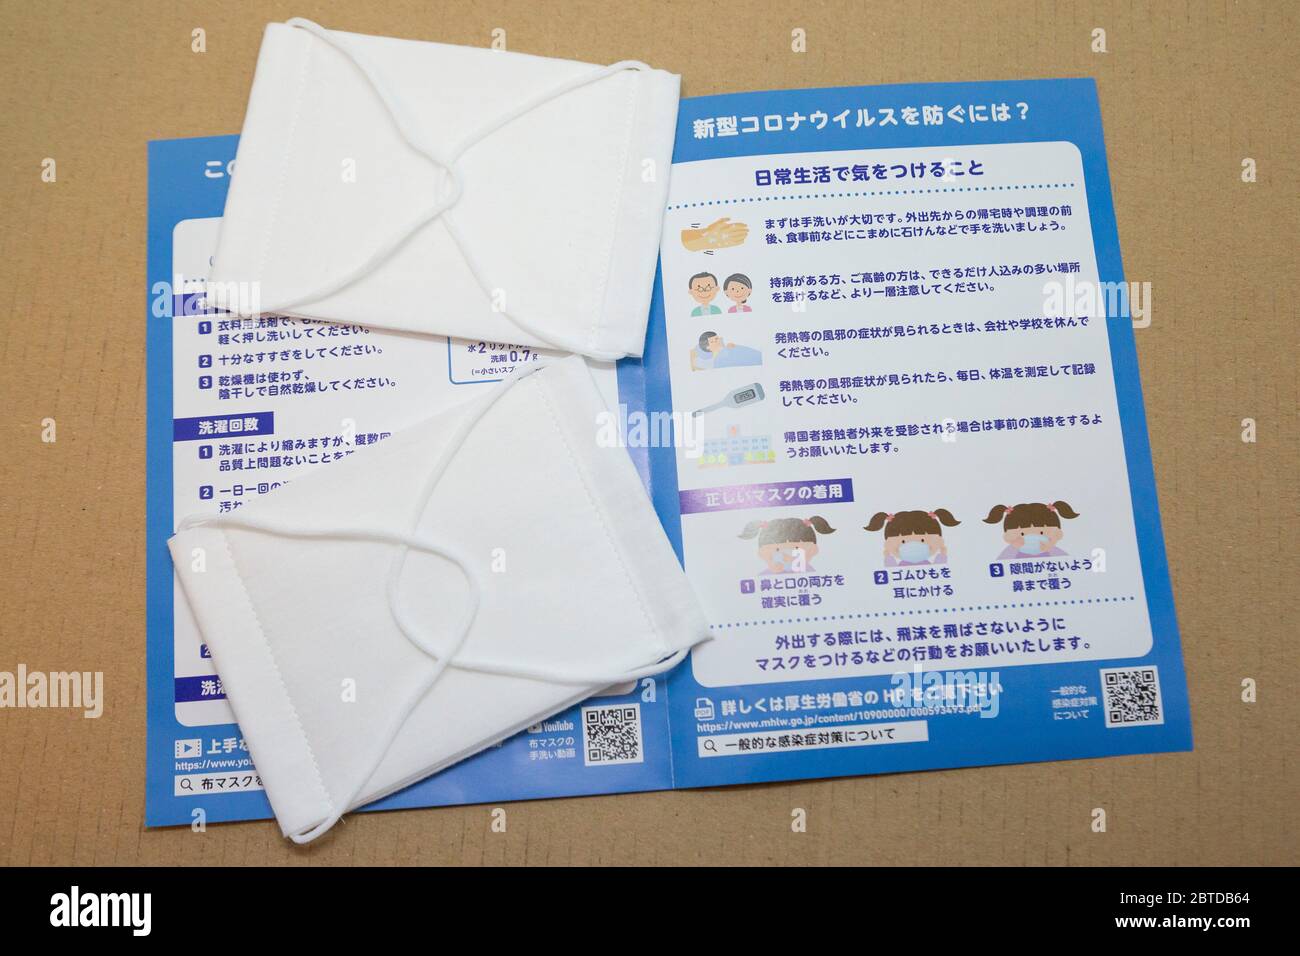 25. Mai 2020, Tokio, Japan: In Tokio wird ein Paket aus zwei Gesichtsmasken  gezeigt, die von der japanischen Regierung an alle Haushalte des Landes  verteilt werden. Die japanische Regierung verteilt zwei Gesichtsmasken